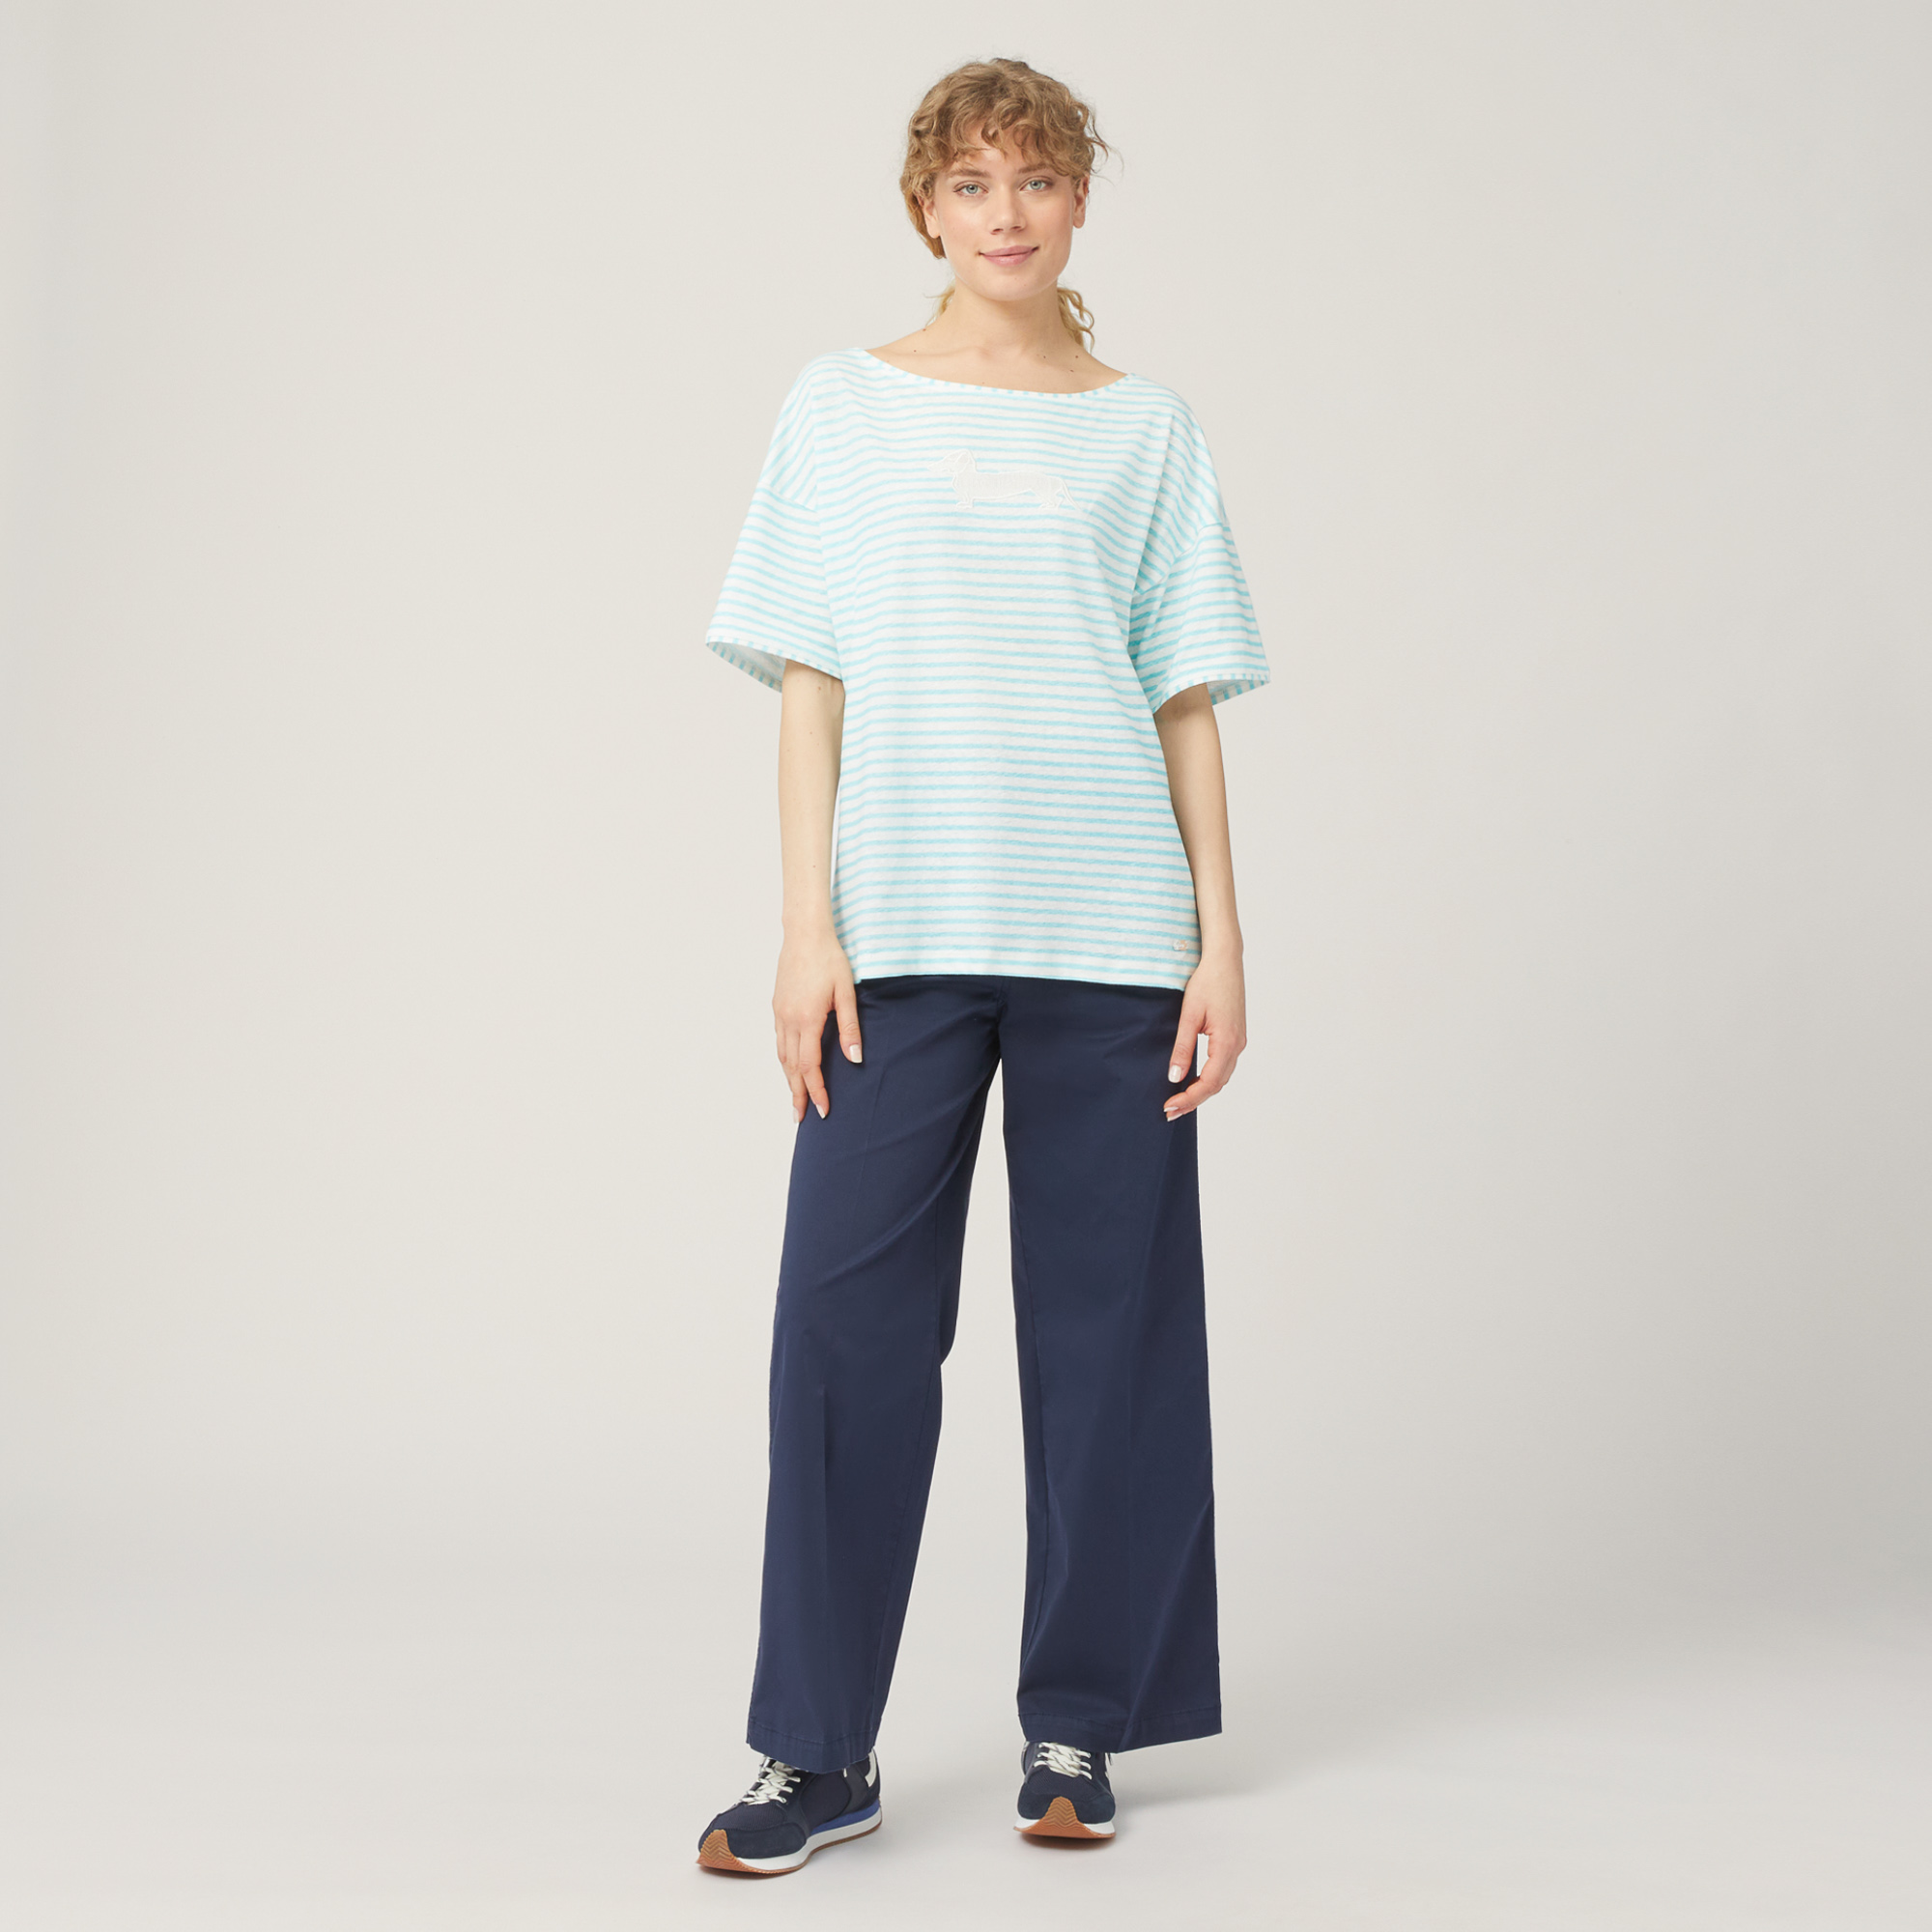 Striped Comfort Fit T-Shirt, Light Blue, large image number 3